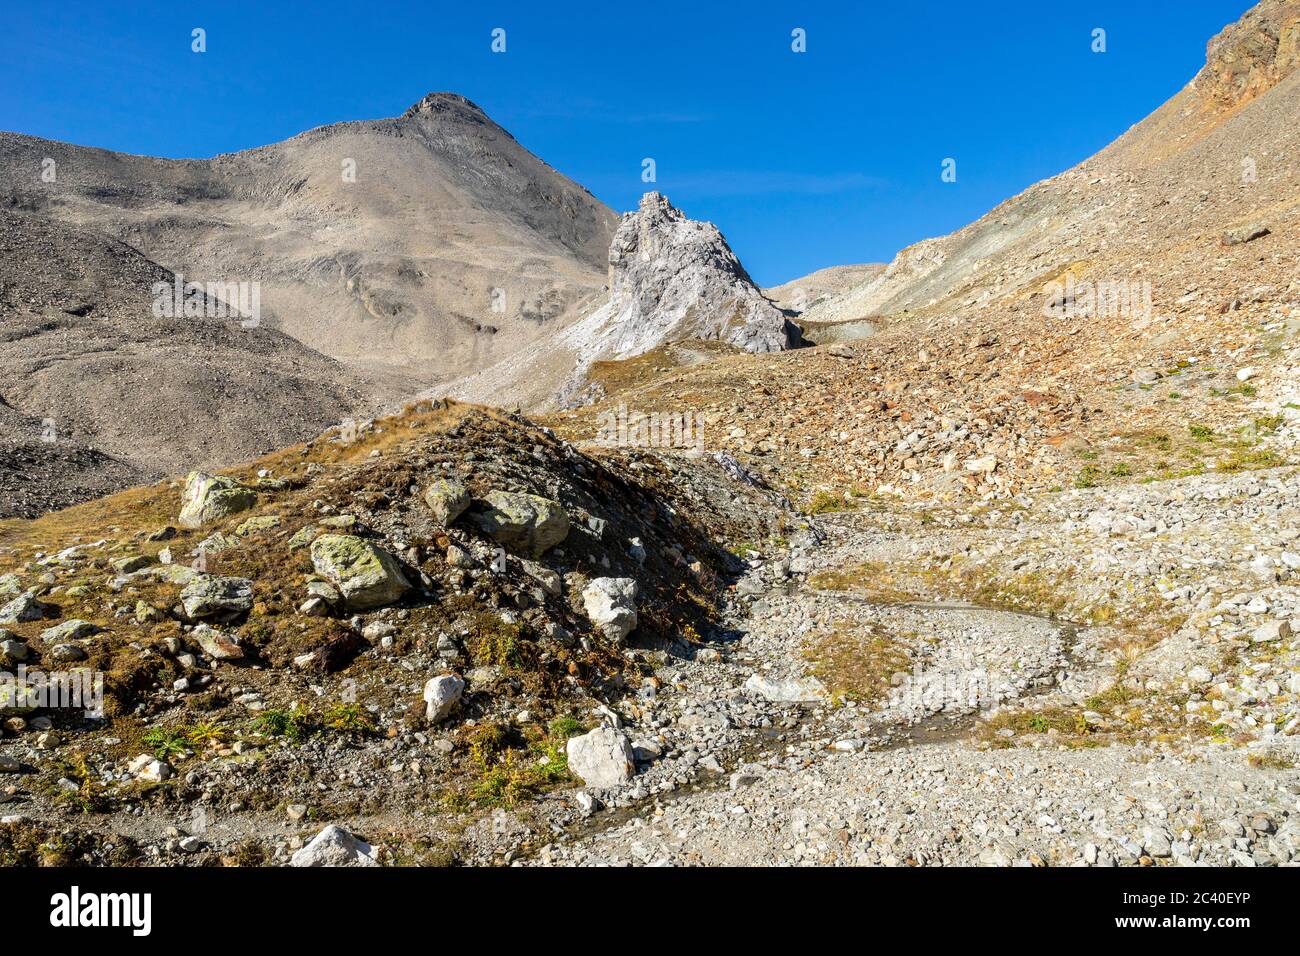 Der Piz Blaisun (Kalkgestein) zuhinterst im Val d'Es-cha. Im Tal eine graue Formation aus Rauwacke und Dolomit-Gestein. Stock Photo